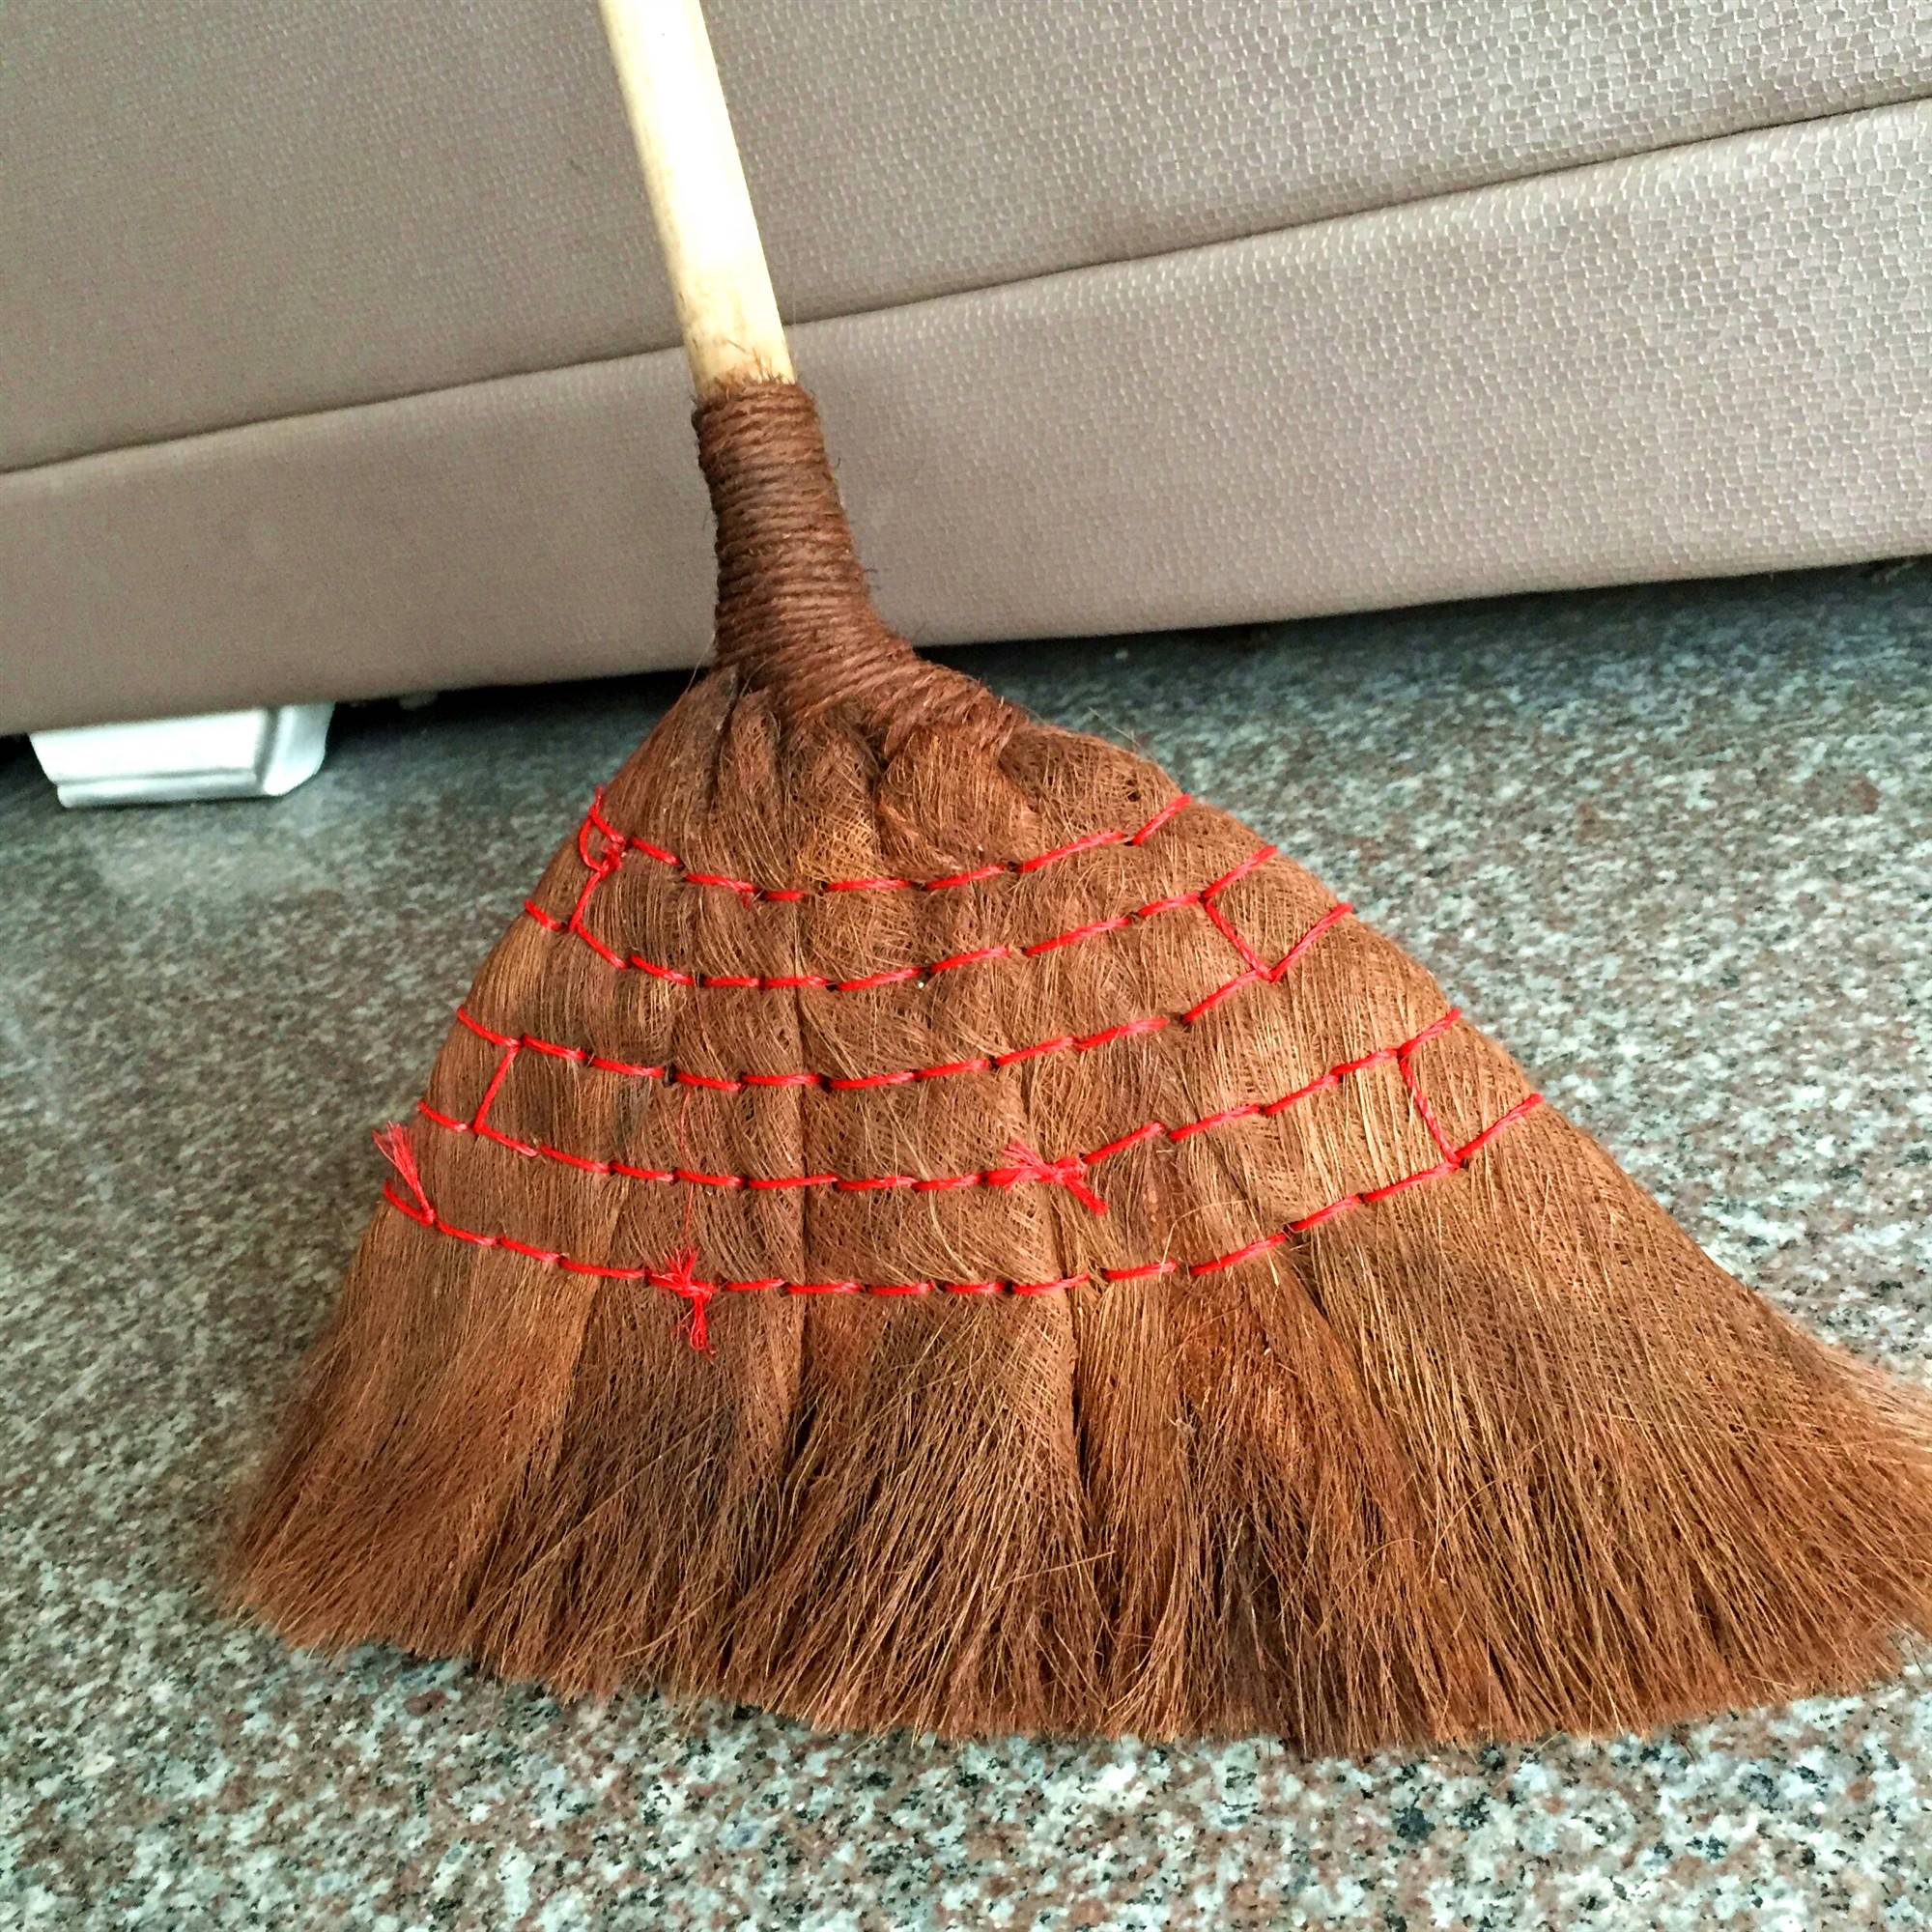 优旋(youe shone)清洁工具 老式手工家用棕扫把加大单个软毛耐用扫帚